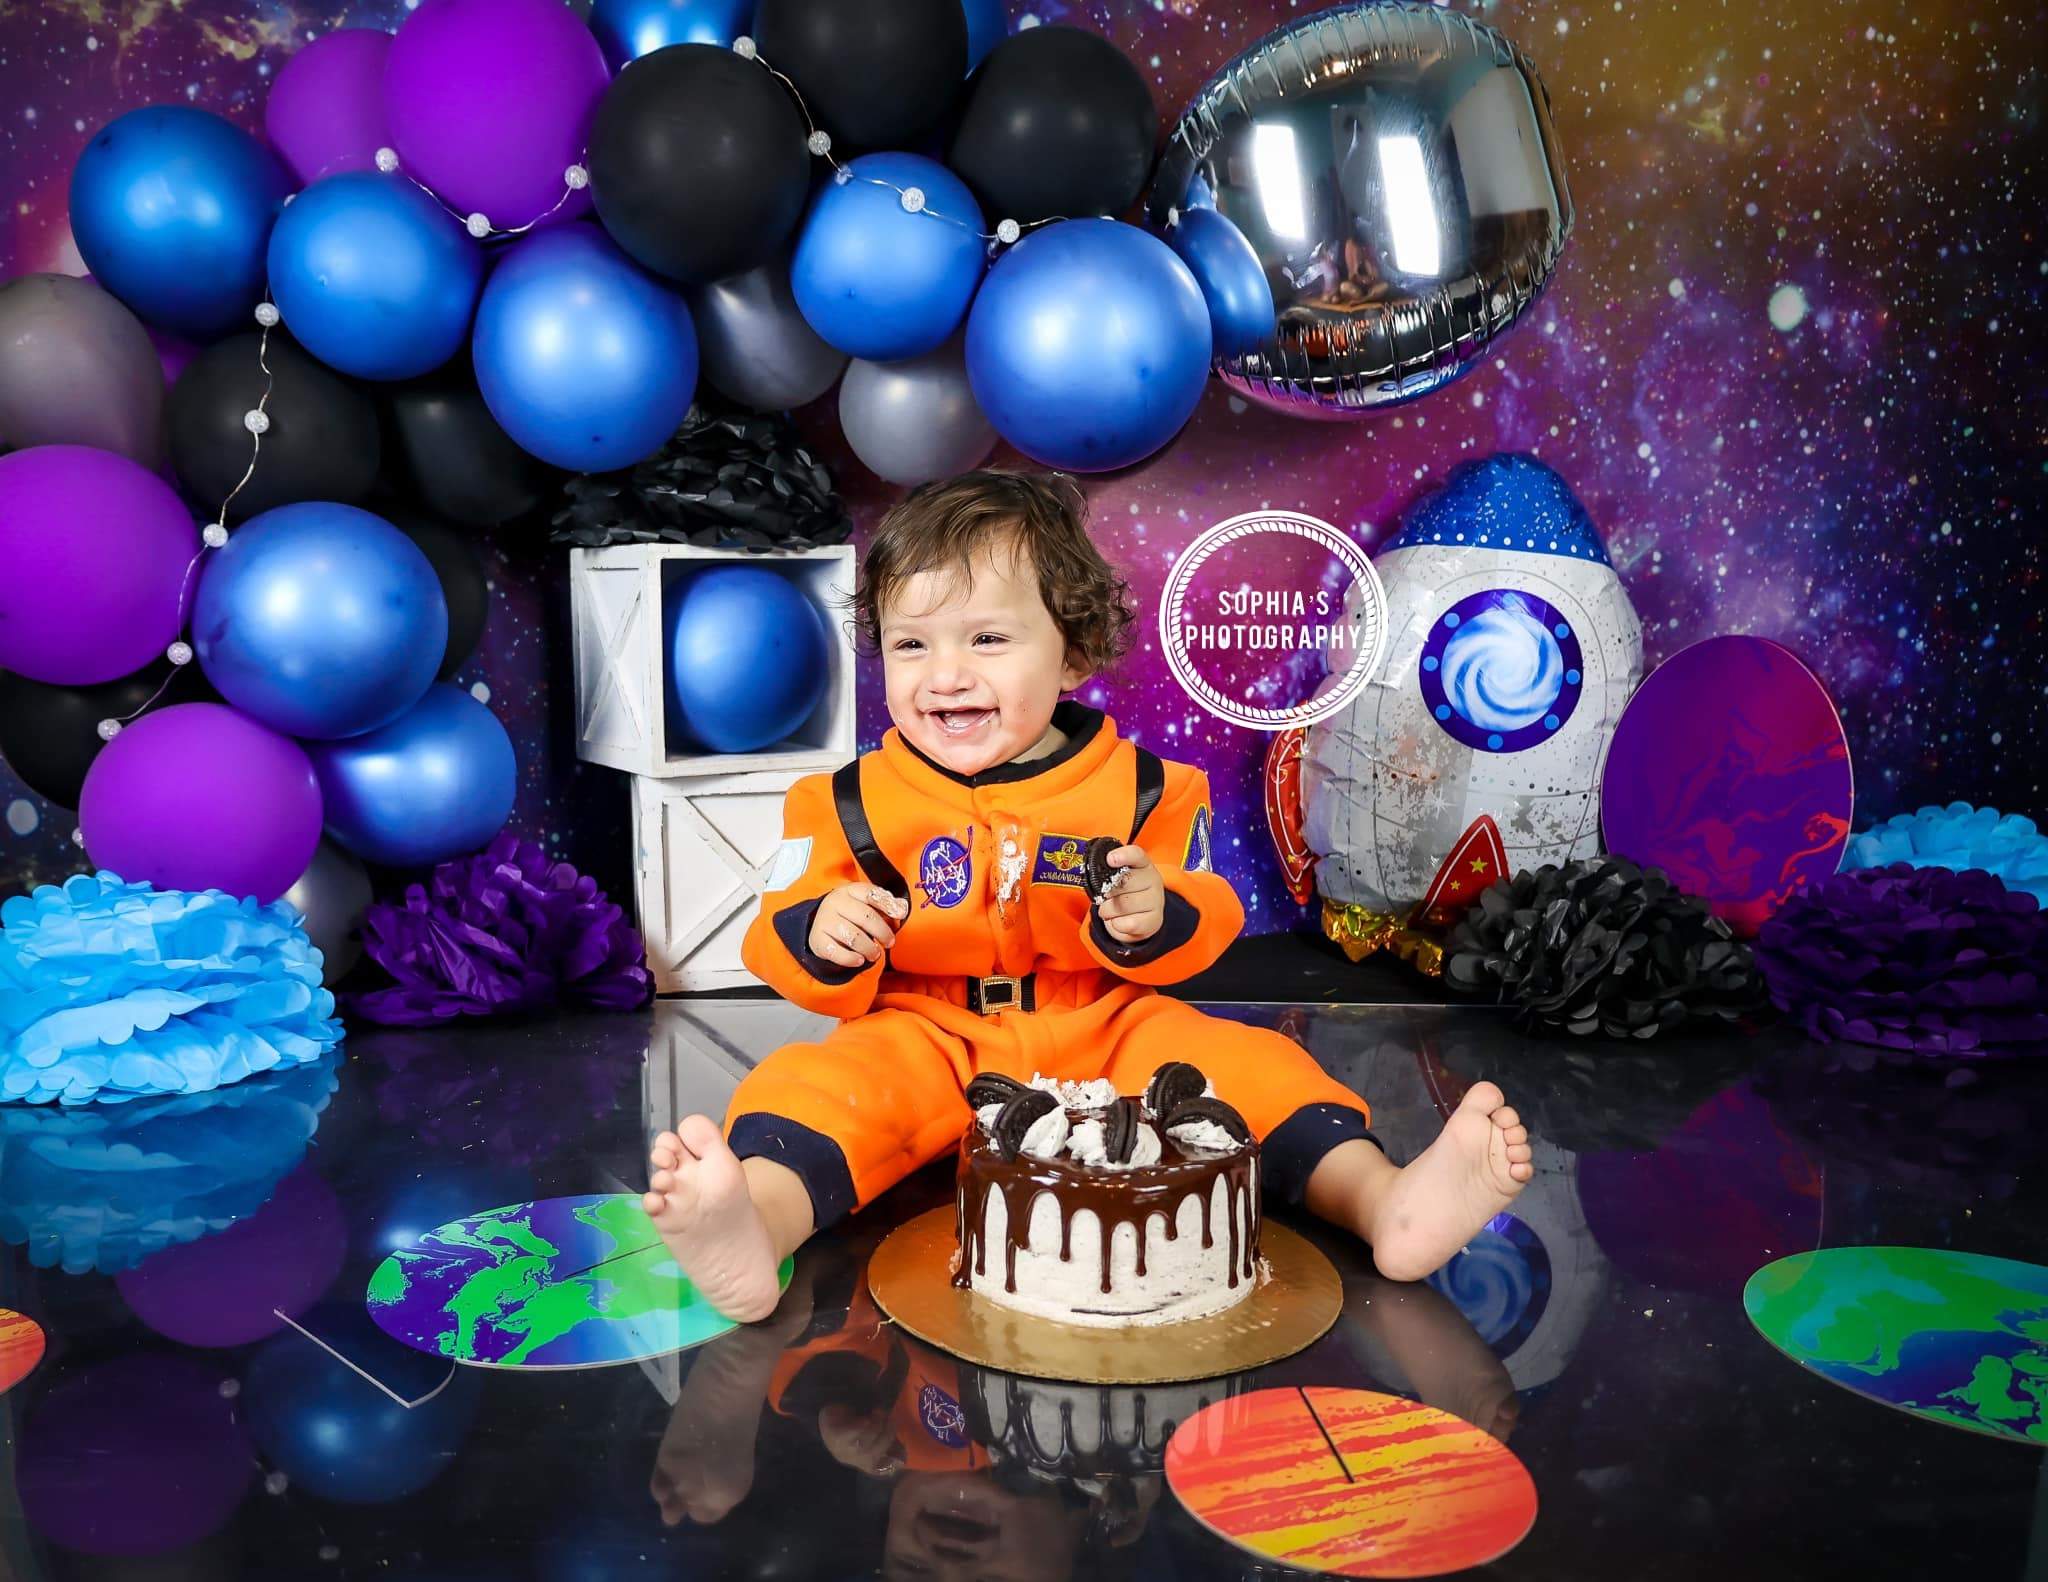 Kate Junge Geburtstag Galaxis Weltraum Hintergrund für die Fotografie